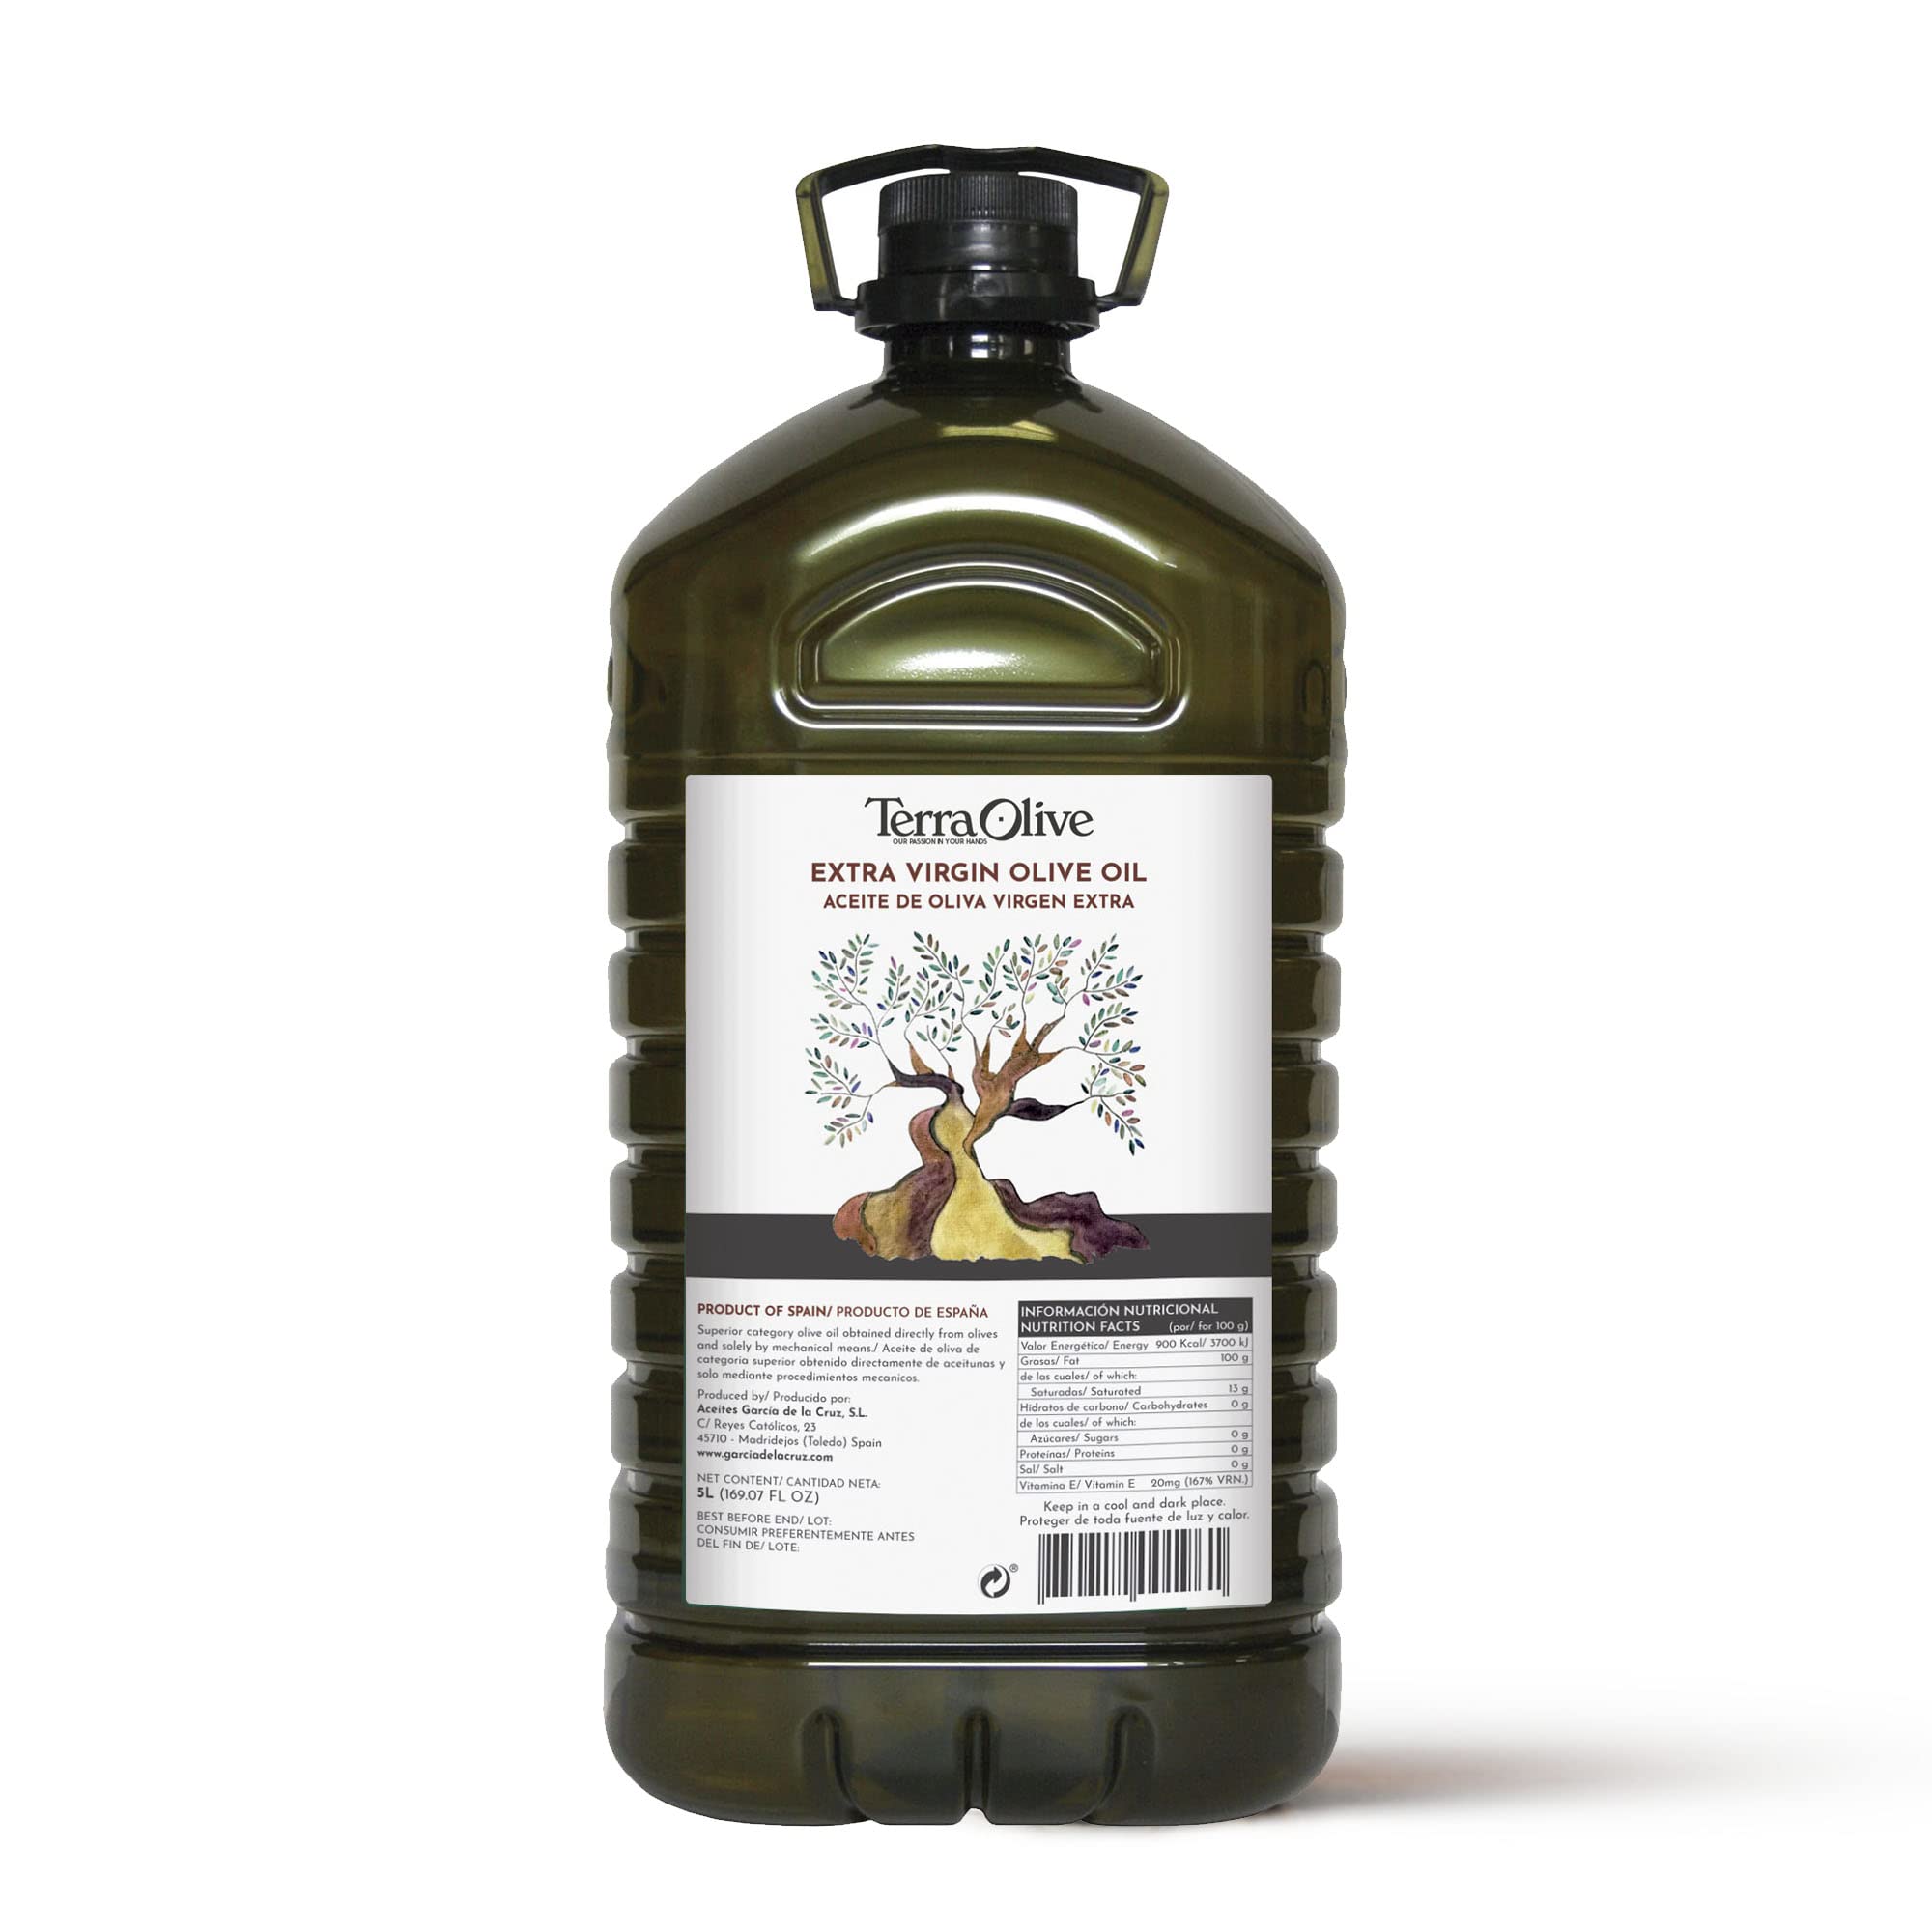 5l olive oil bottle, olive oil deals. Spanish extra virgin olive oil